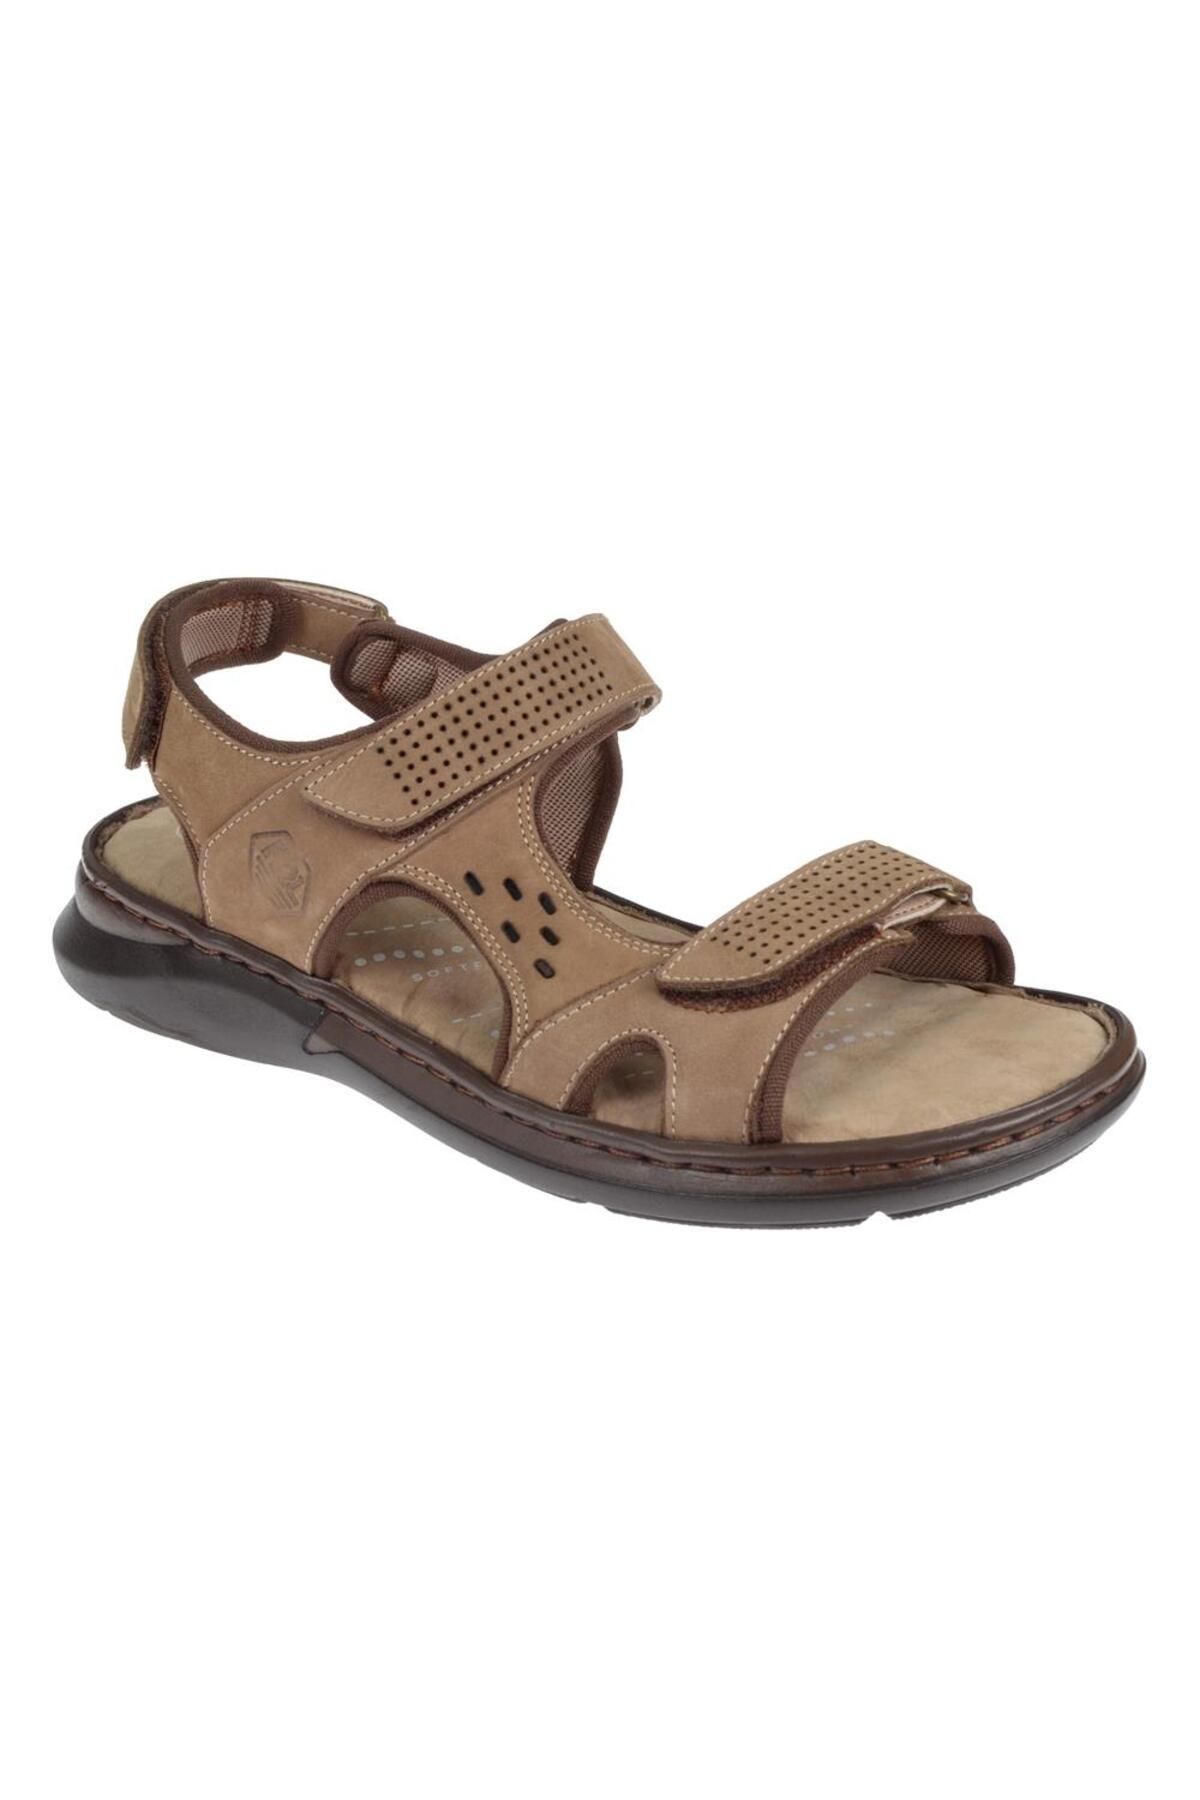 Forelli Hakiki Deri Comfort Cırtlı Erkek Sandalet For-40526 Kum Nubuk